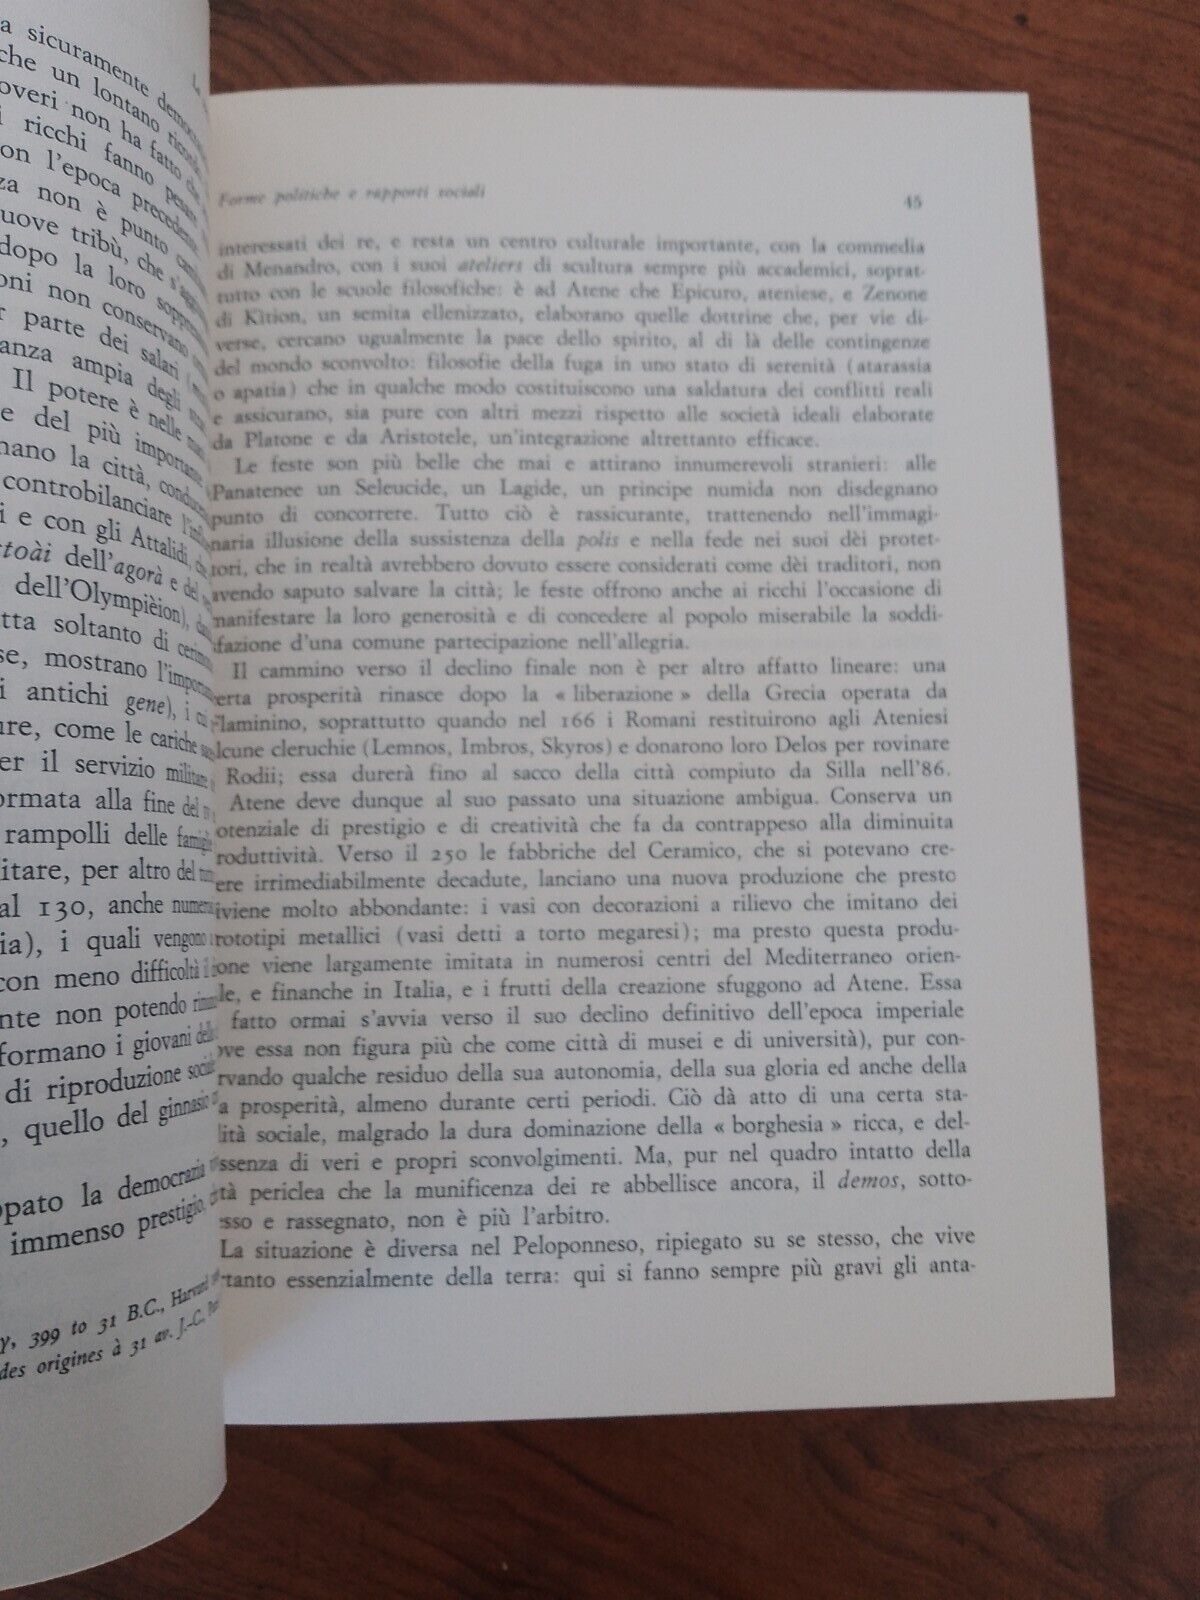 La società ellenistica/ Quadro politico,  Bompiani - 1977